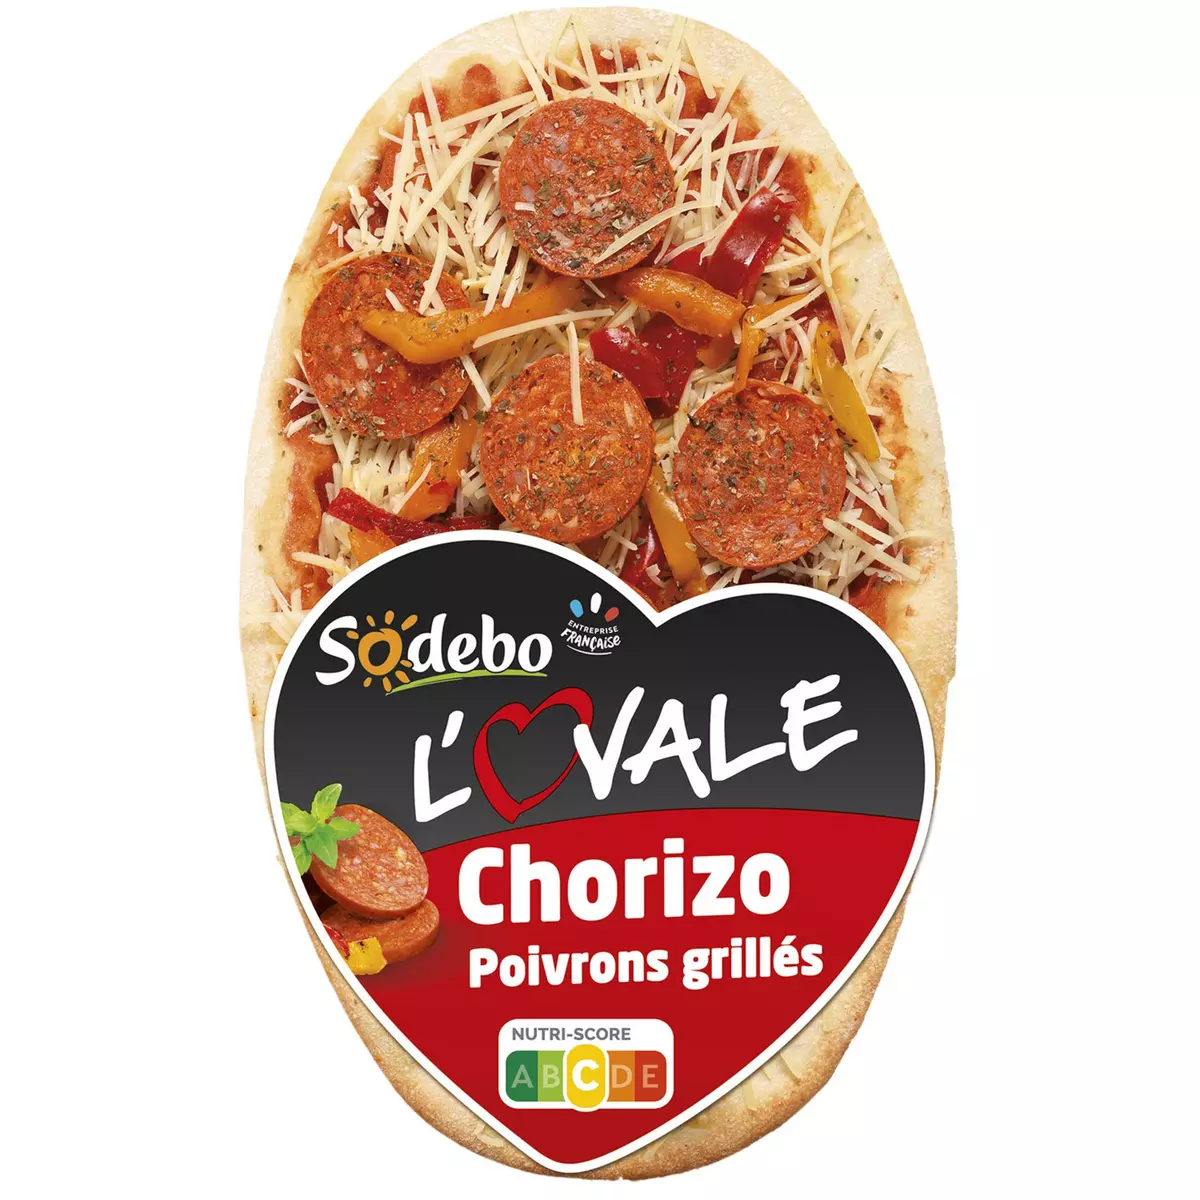 SODEBO Pizza l'ovale chorizo poivrons grillés 1 portion 200g